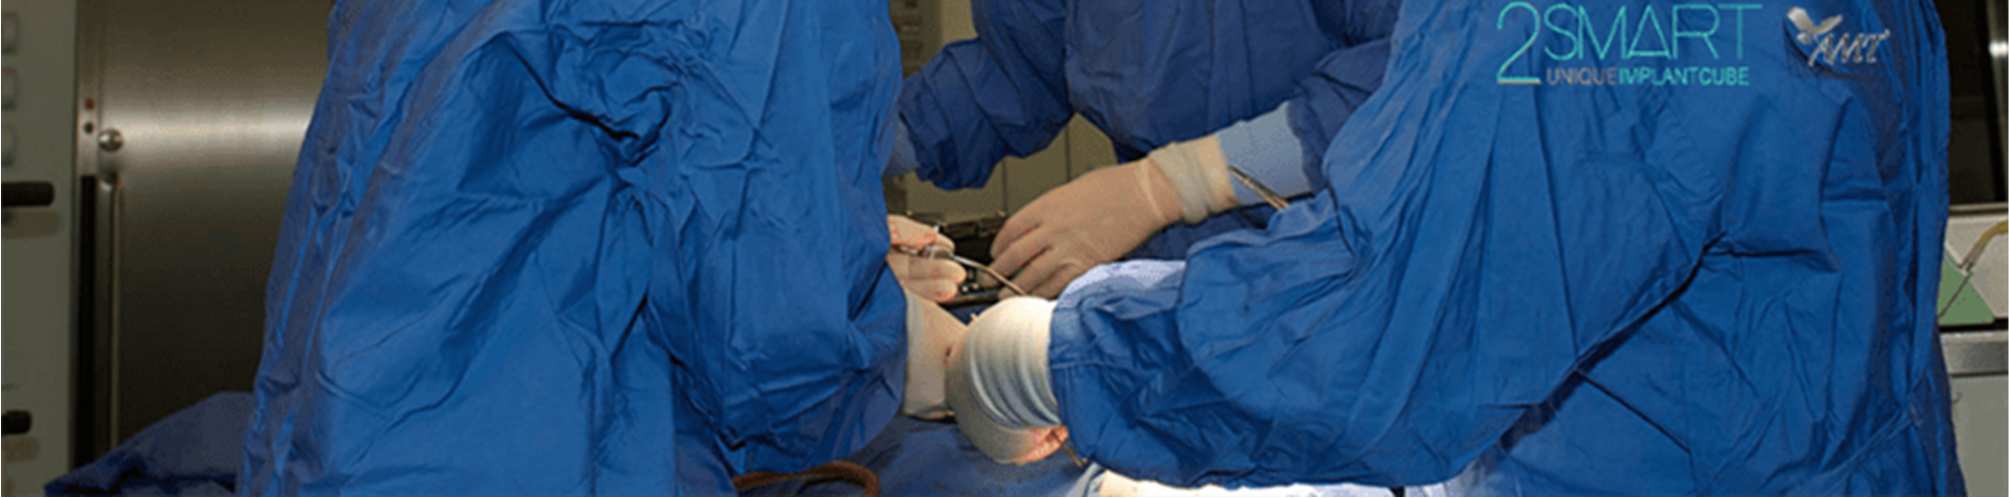 AMT Advanced Medical Technology e la clinica San Martino in partnership organizzano un corso dettagliato di chirurgia implantare con le più evolute tecnologie attualmente disponibili.